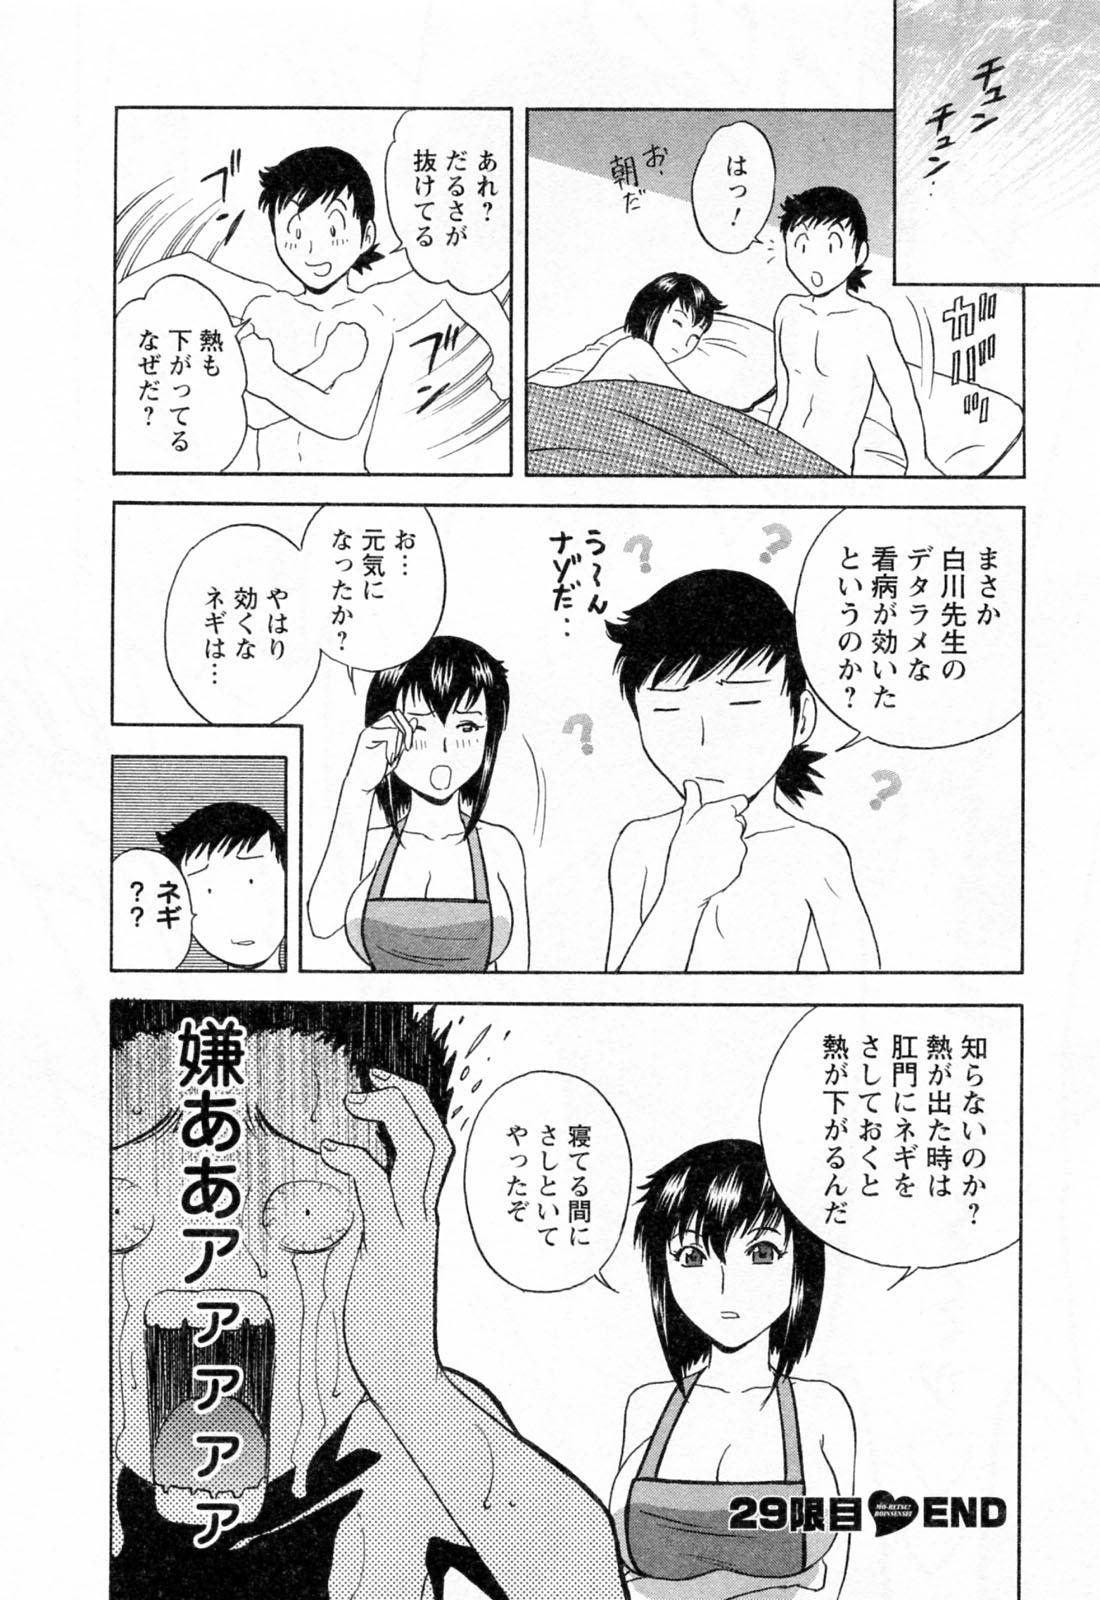 [Hidemaru] Mo-Retsu! Boin Sensei (Boing Boing Teacher) Vol.4 53